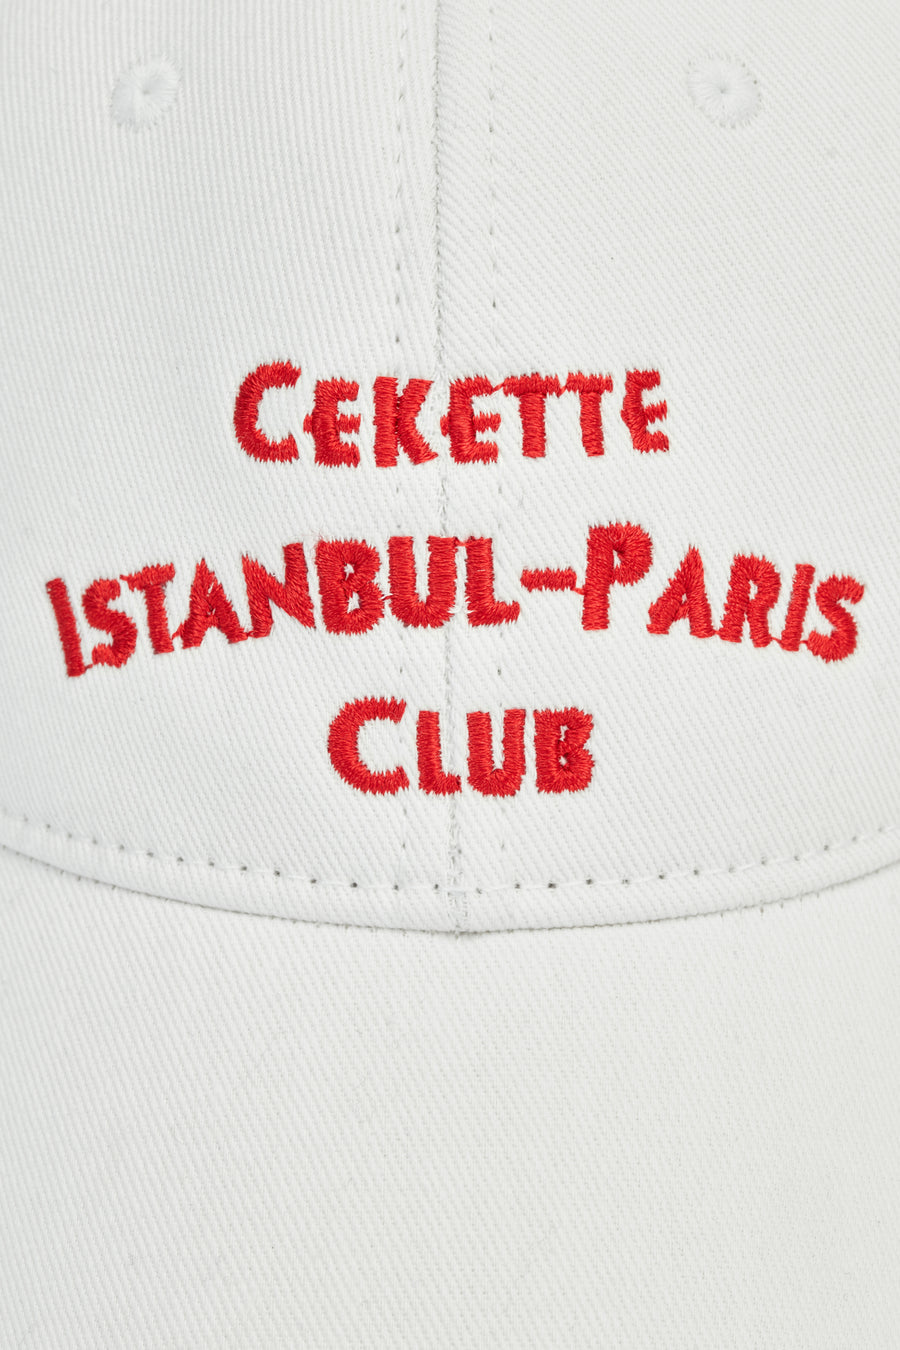 Cekette Paris-İstanbul Club Cap